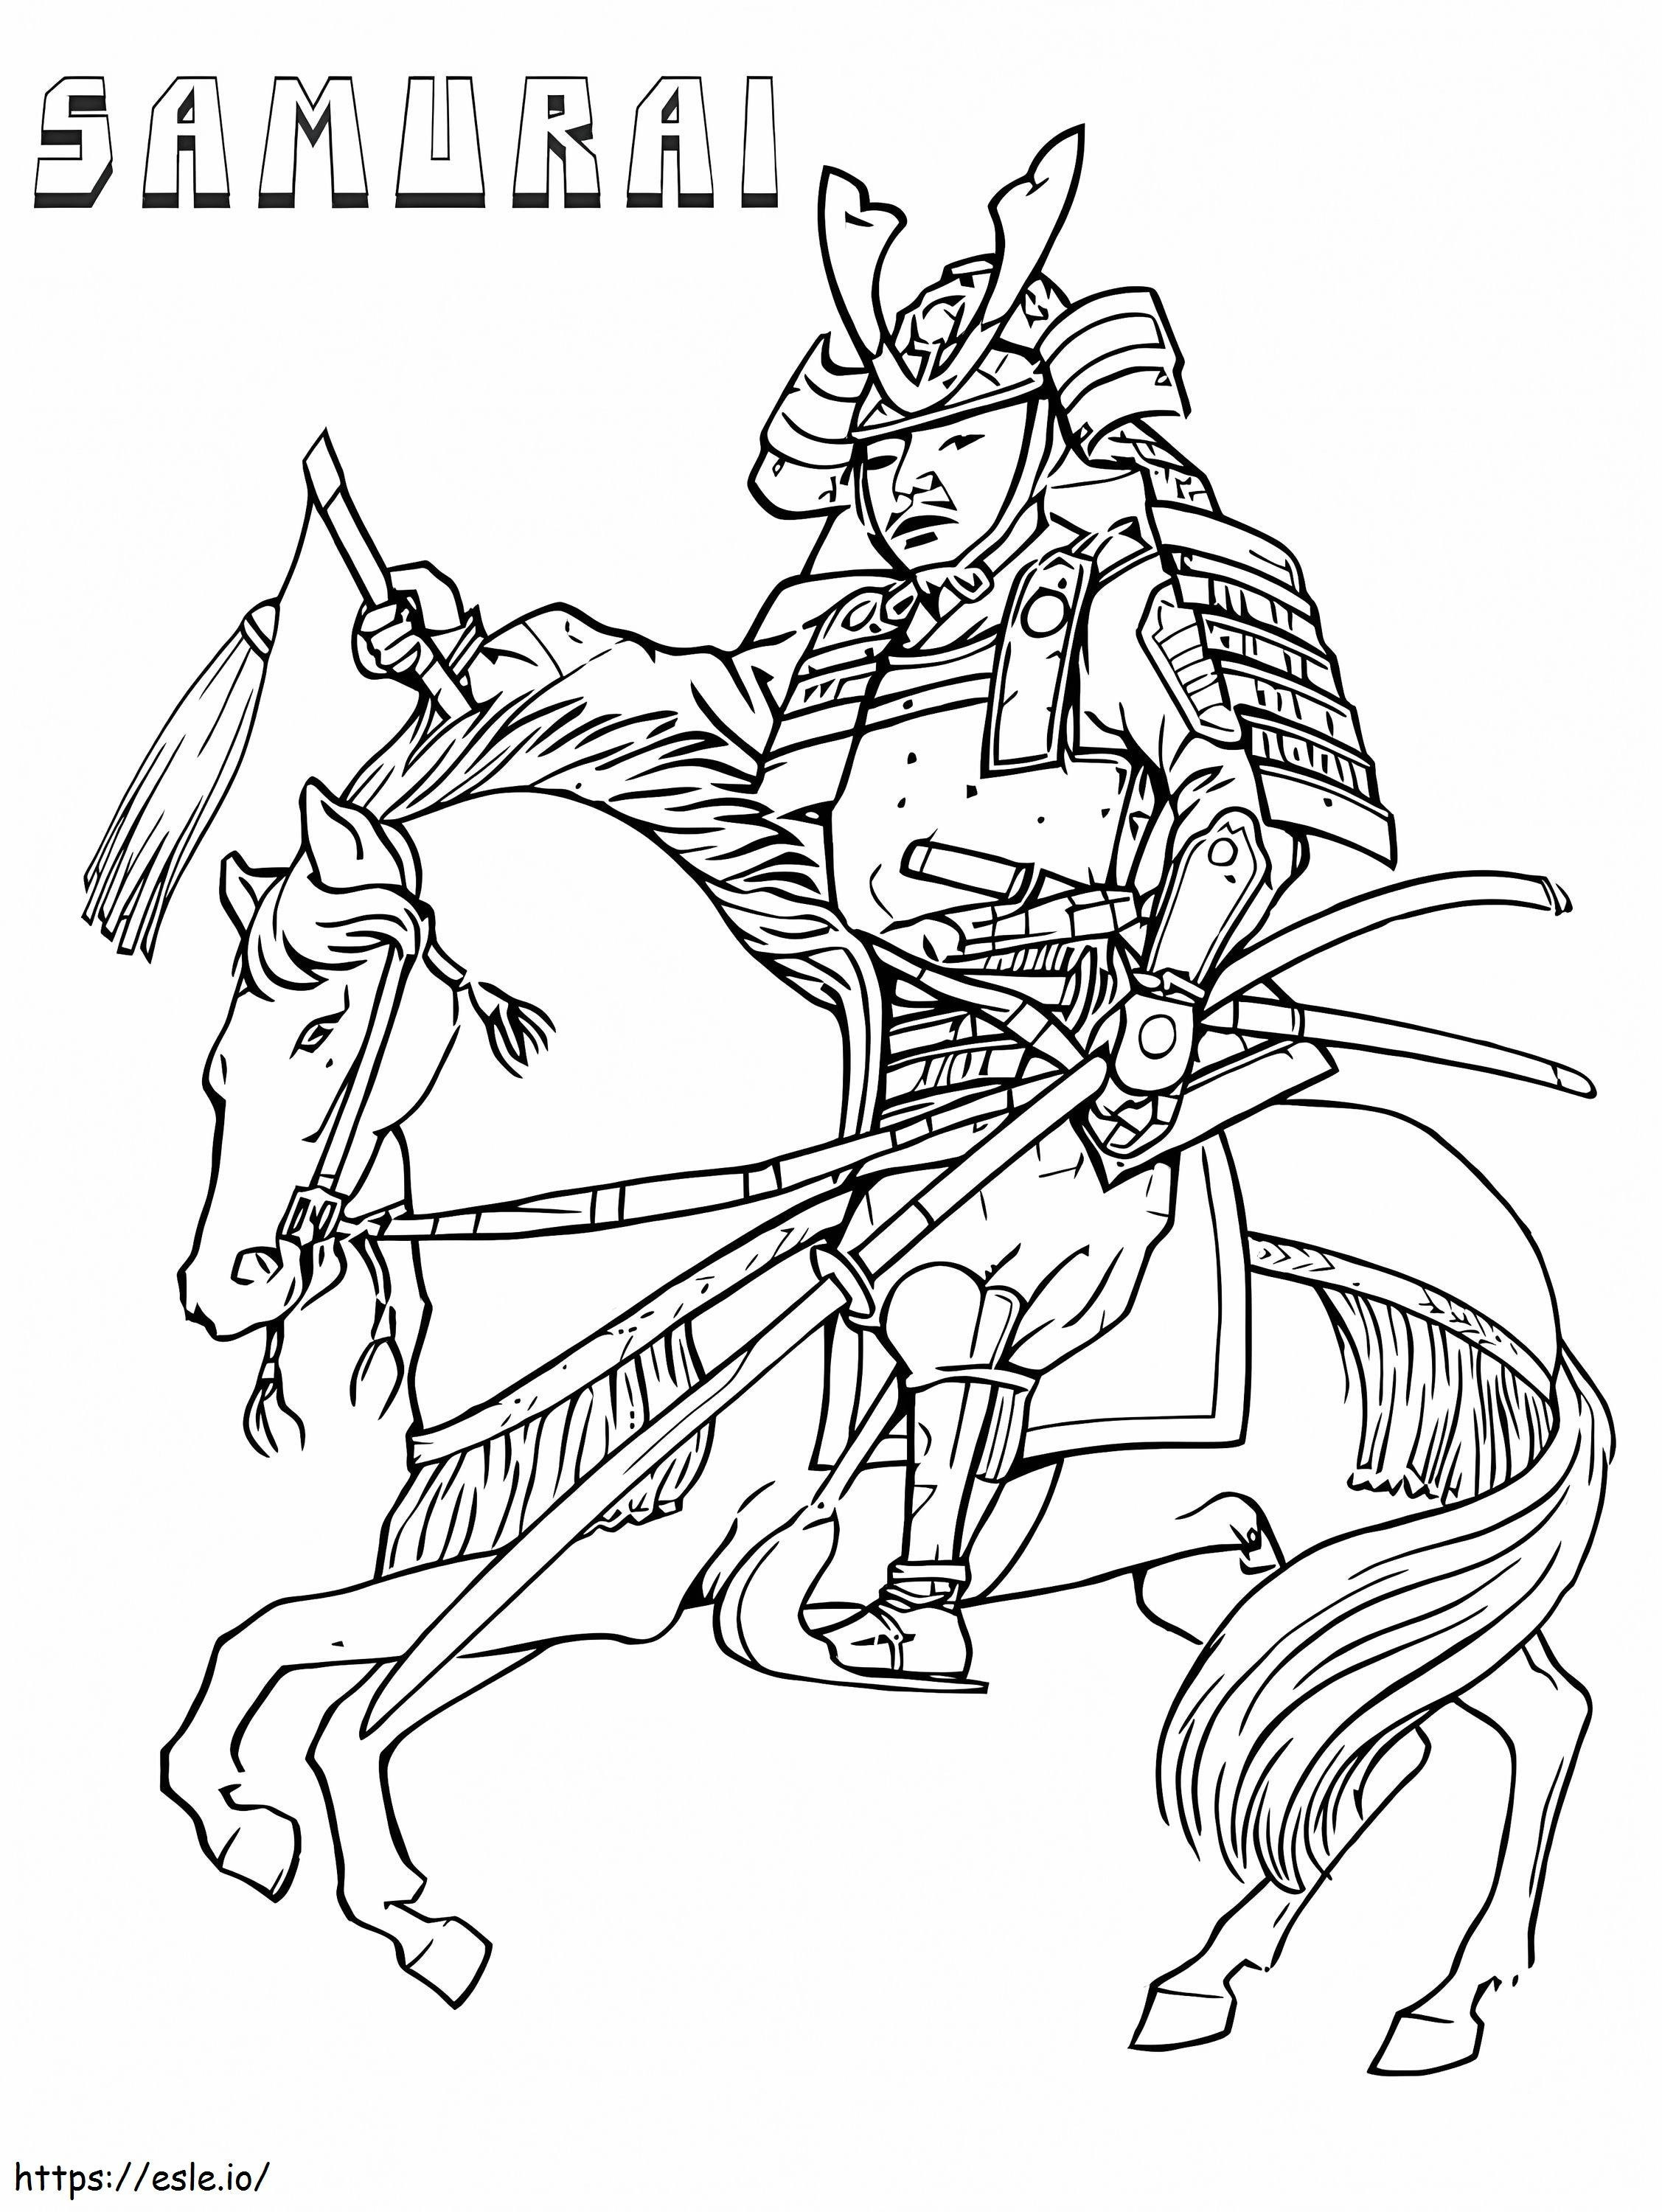 Samurai pe cal de colorat